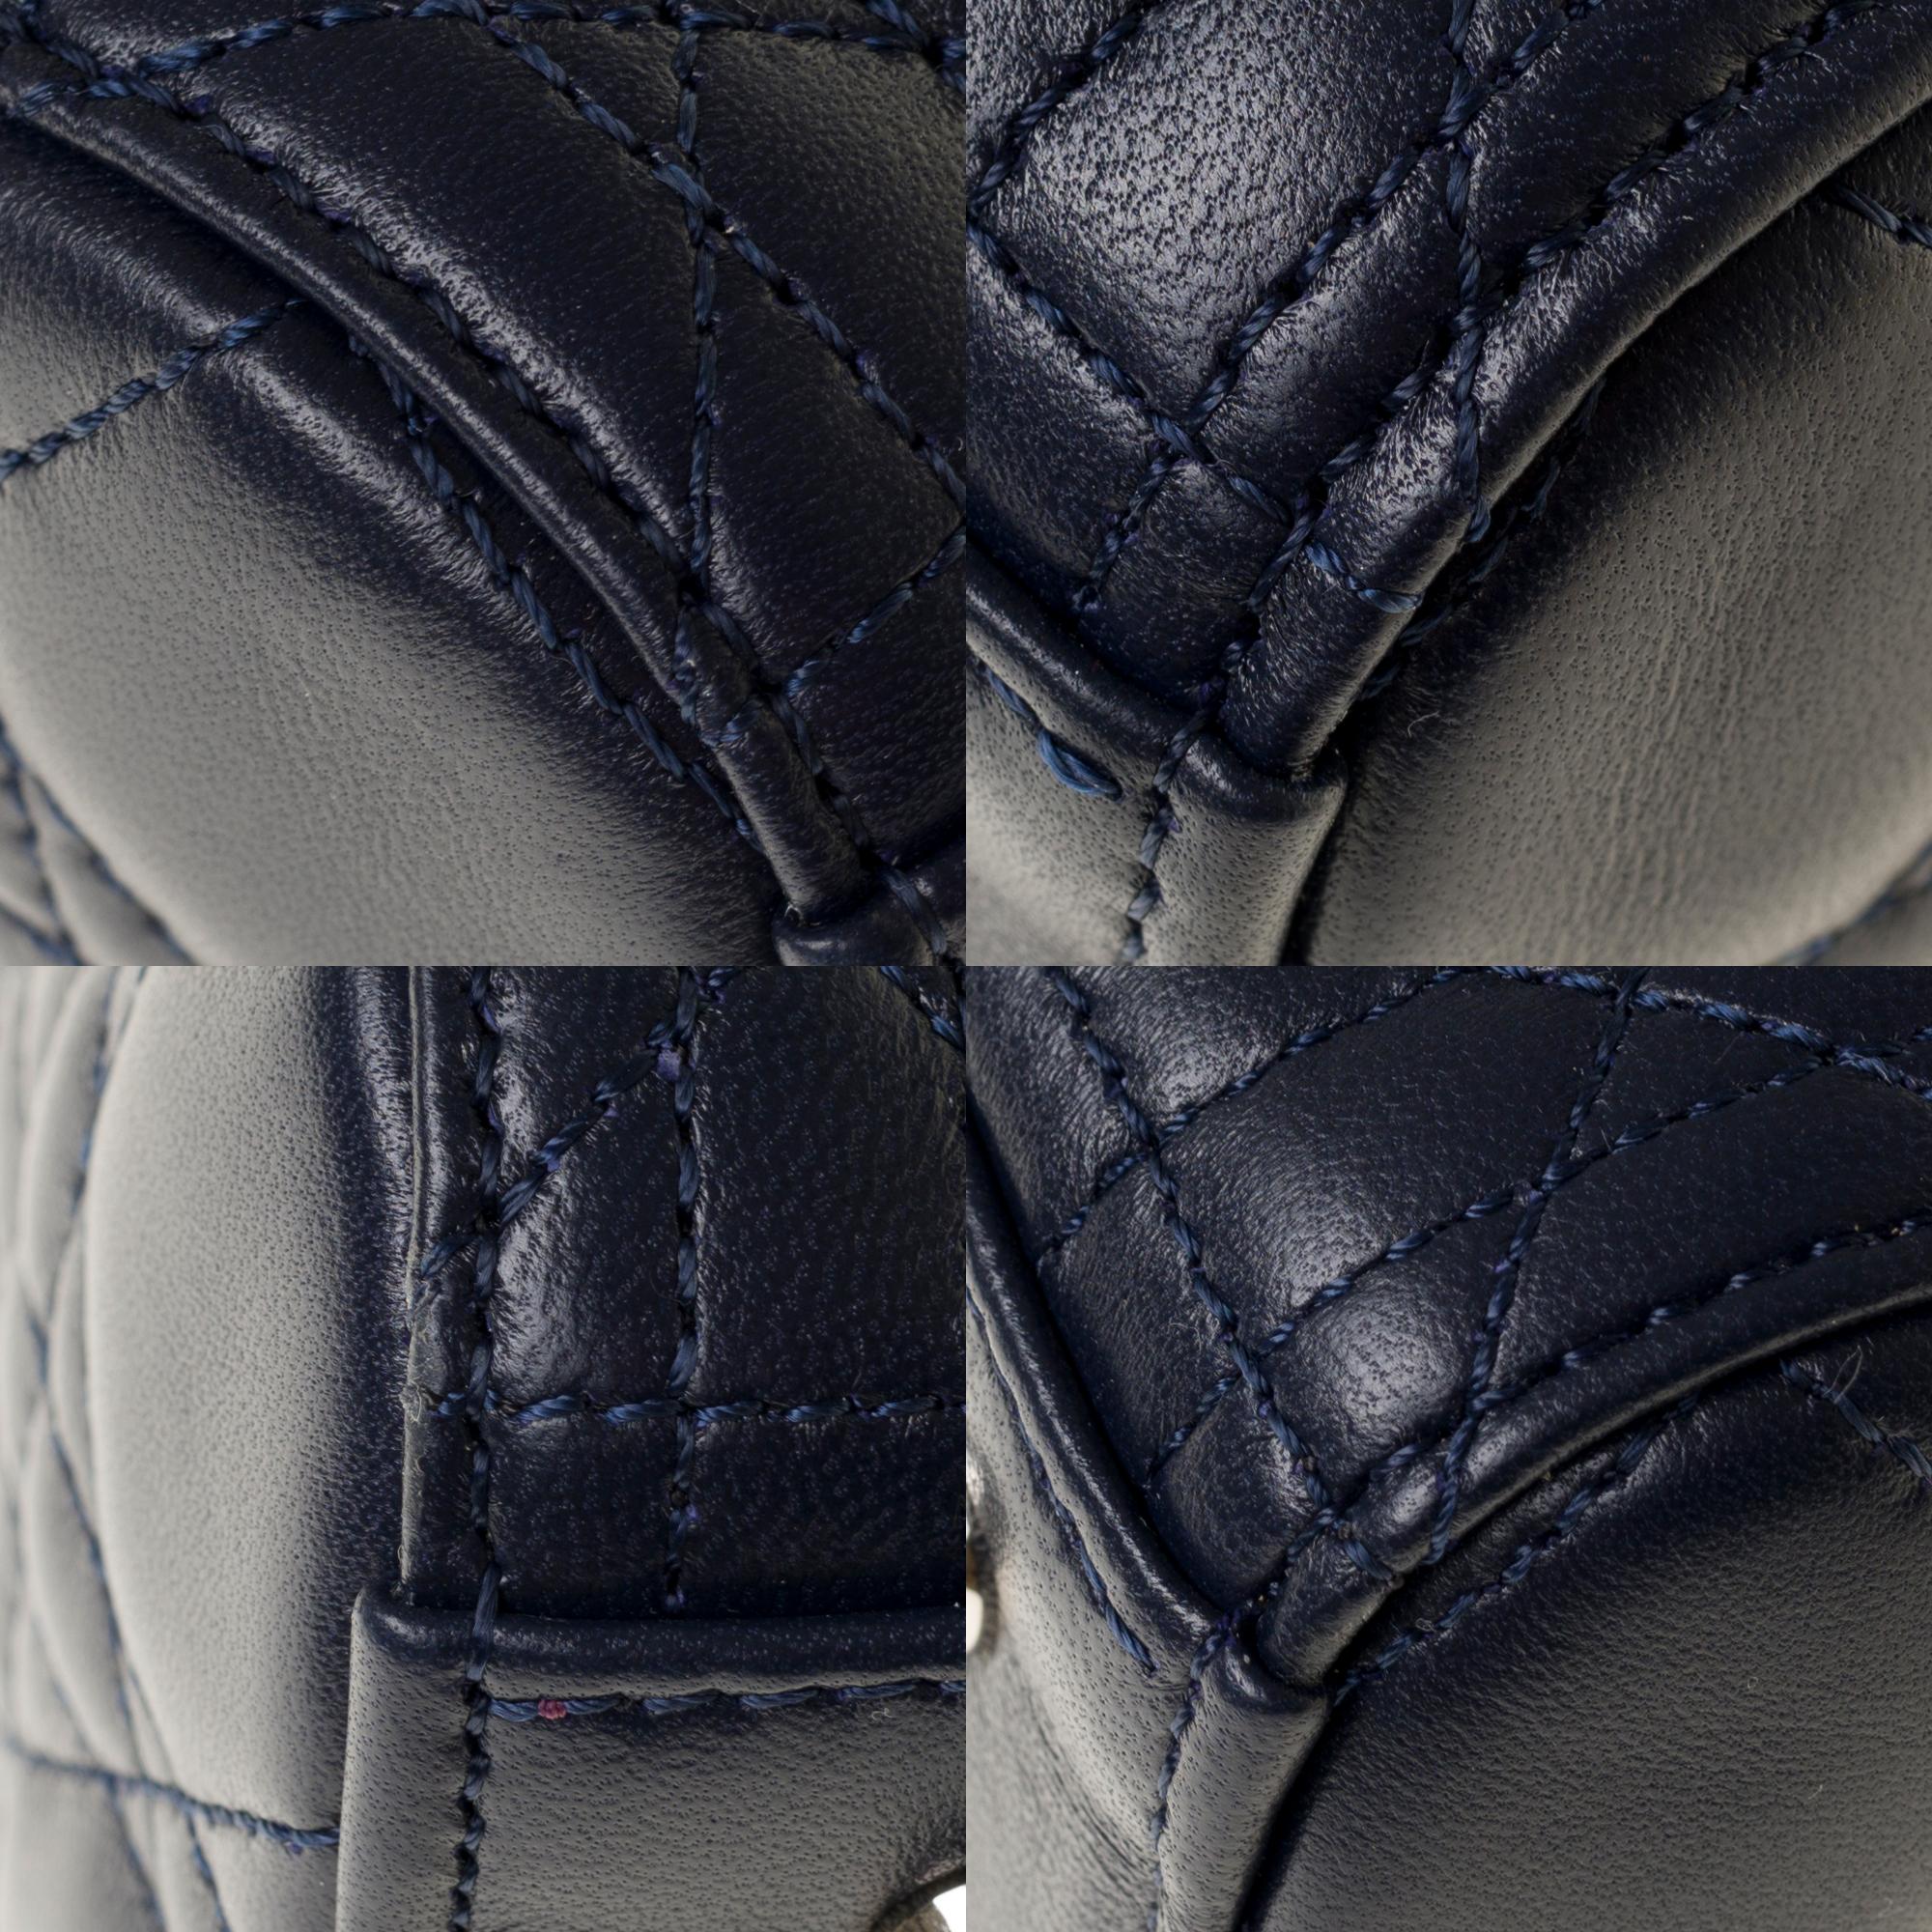  Christian Dior Lady Dior Medium size handbag in blue navy cannage leather, PHW 5